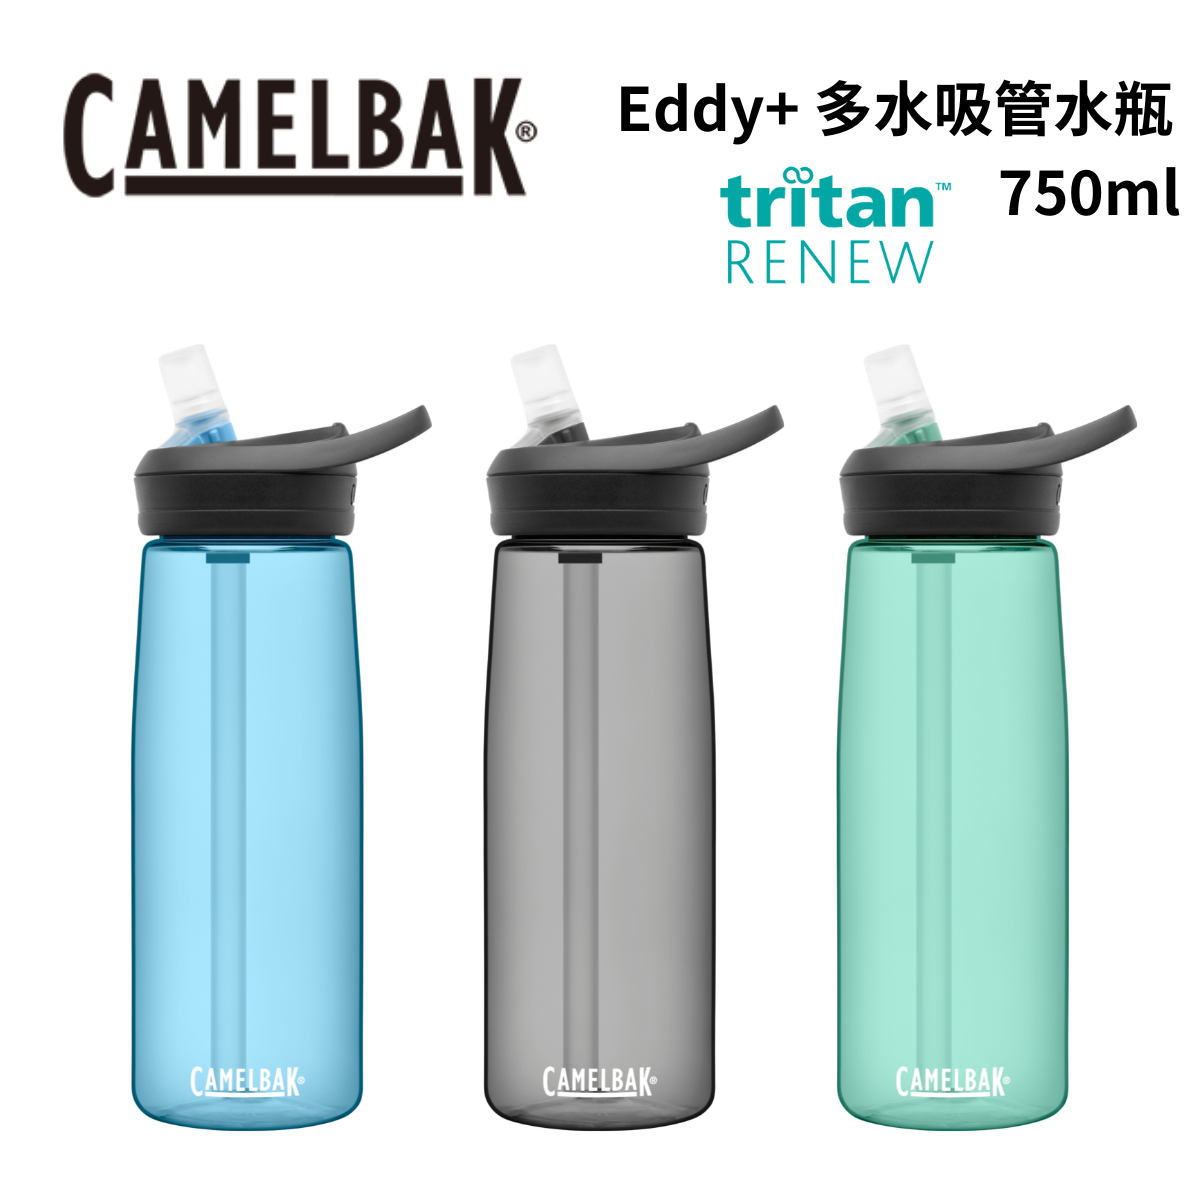 【Camelbak】eddy+ 多水吸管水瓶 Tritan™ RENEW - 750ml